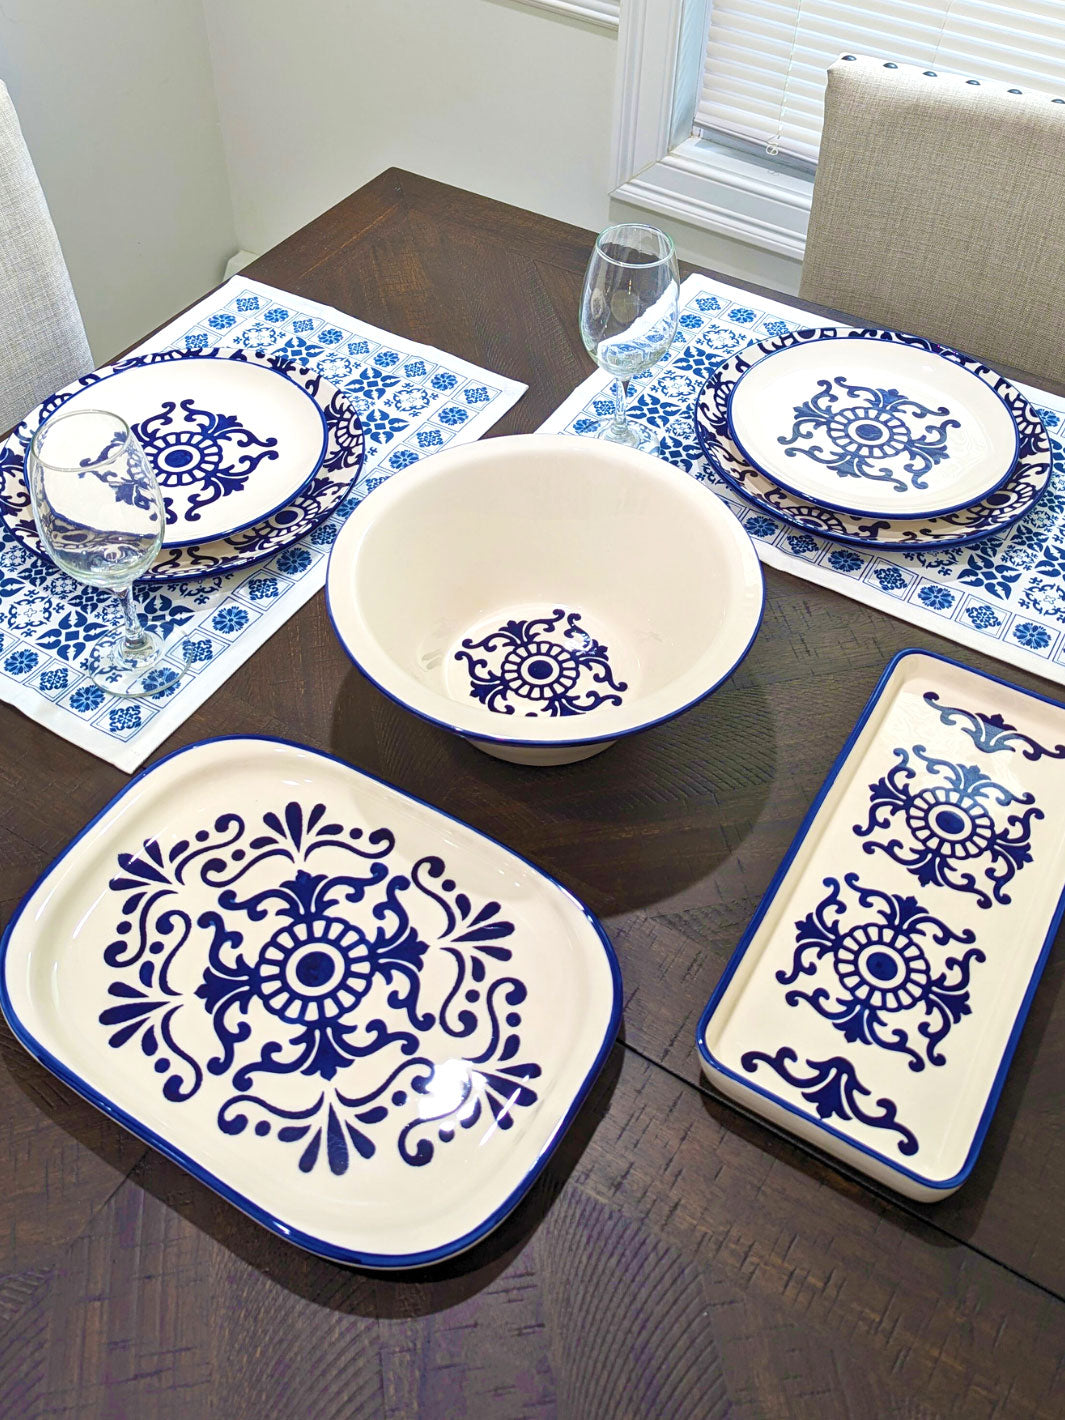 Portuguese Pottery Ceramic Dessert Plate - Tradition